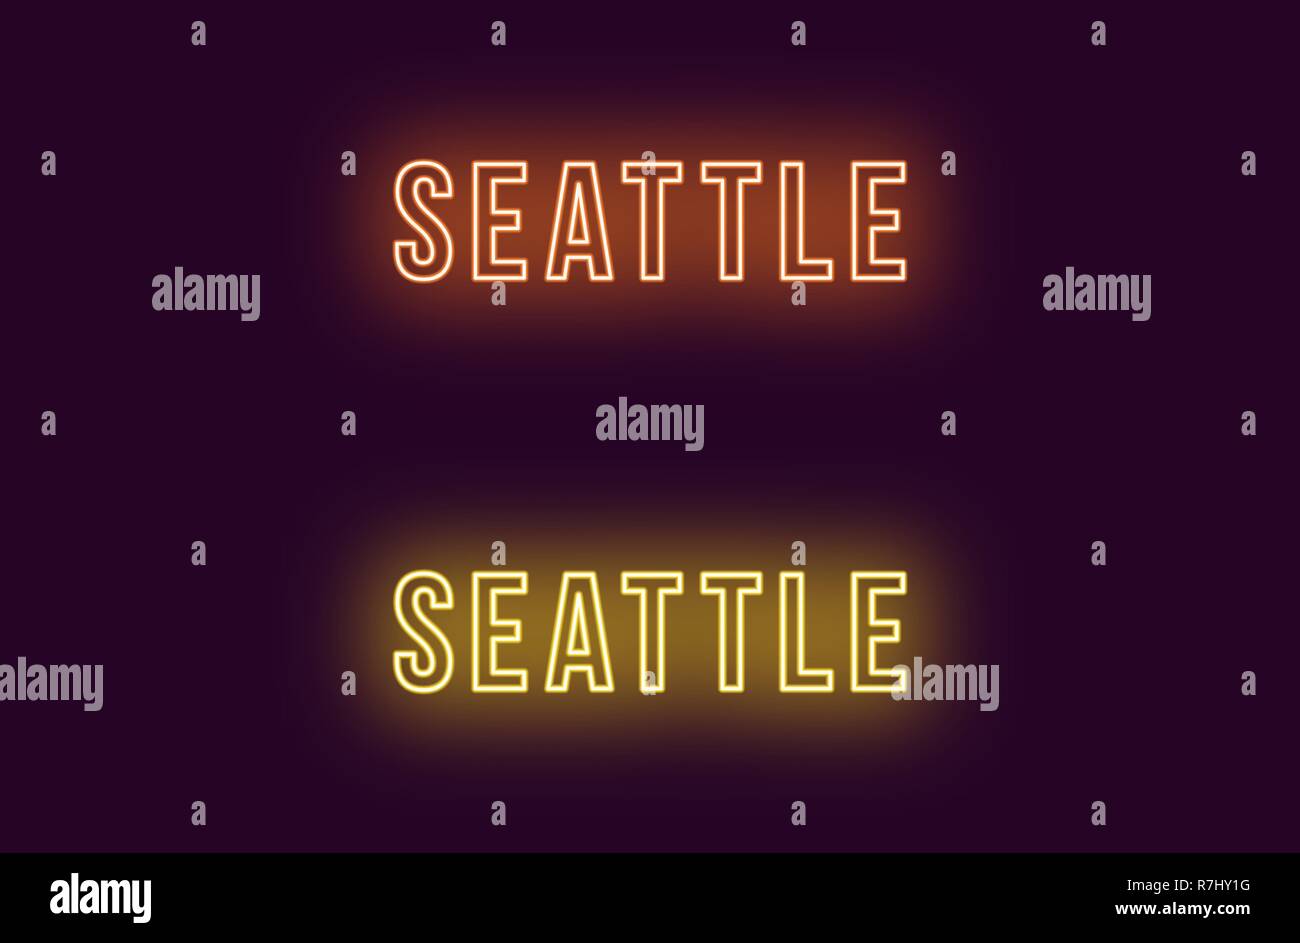 Neon Name des Seattle City in den USA. Vektor Text von Seattle, Neon Beschriftung mit Hintergrundbeleuchtung Fett Stil, orangen und gelben Farben. Isolierte glühende Ti Stock Vektor